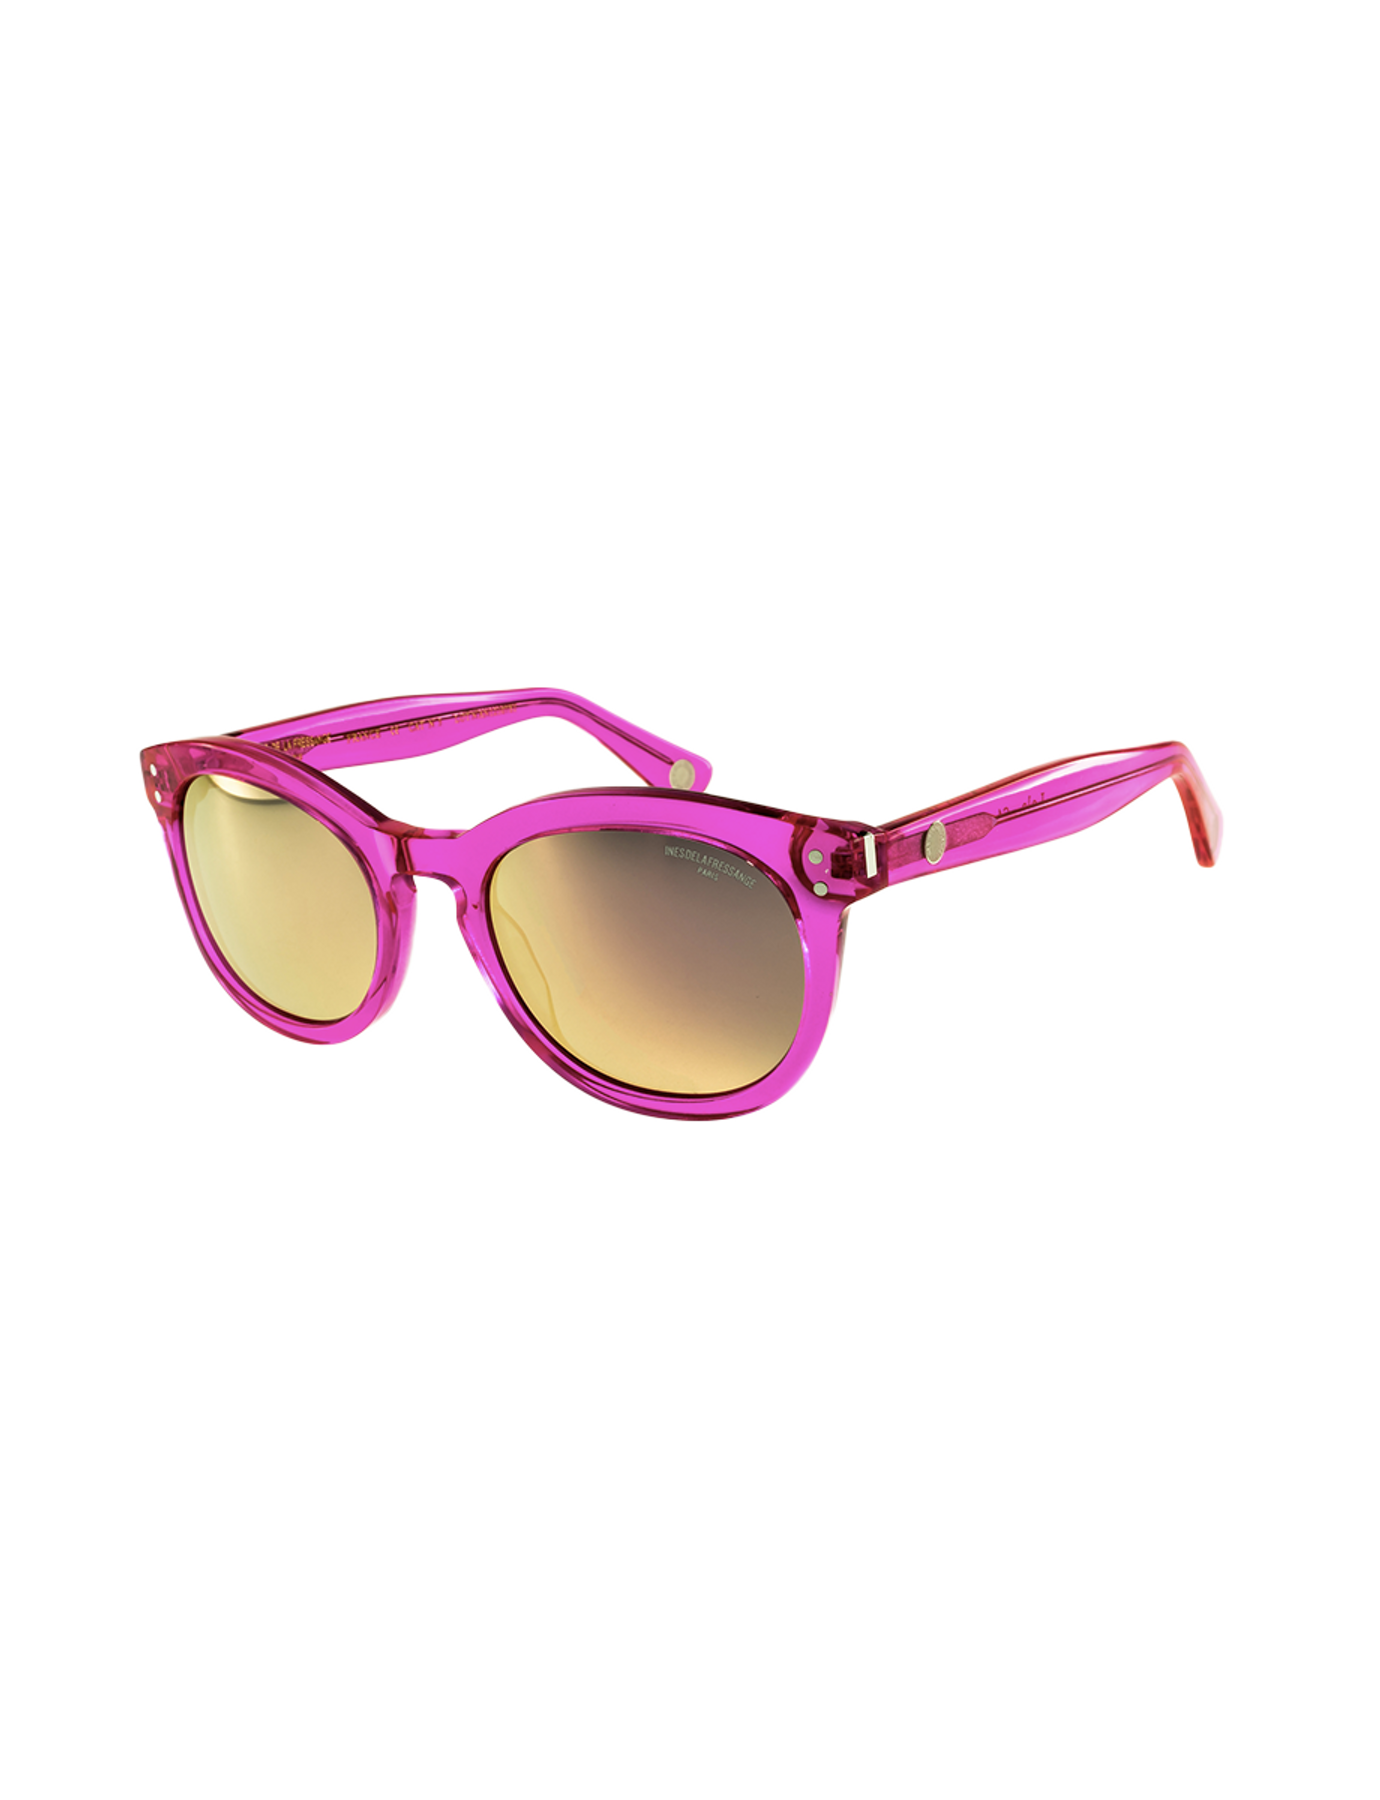 occhiali da sole-lola-rosa-fluo